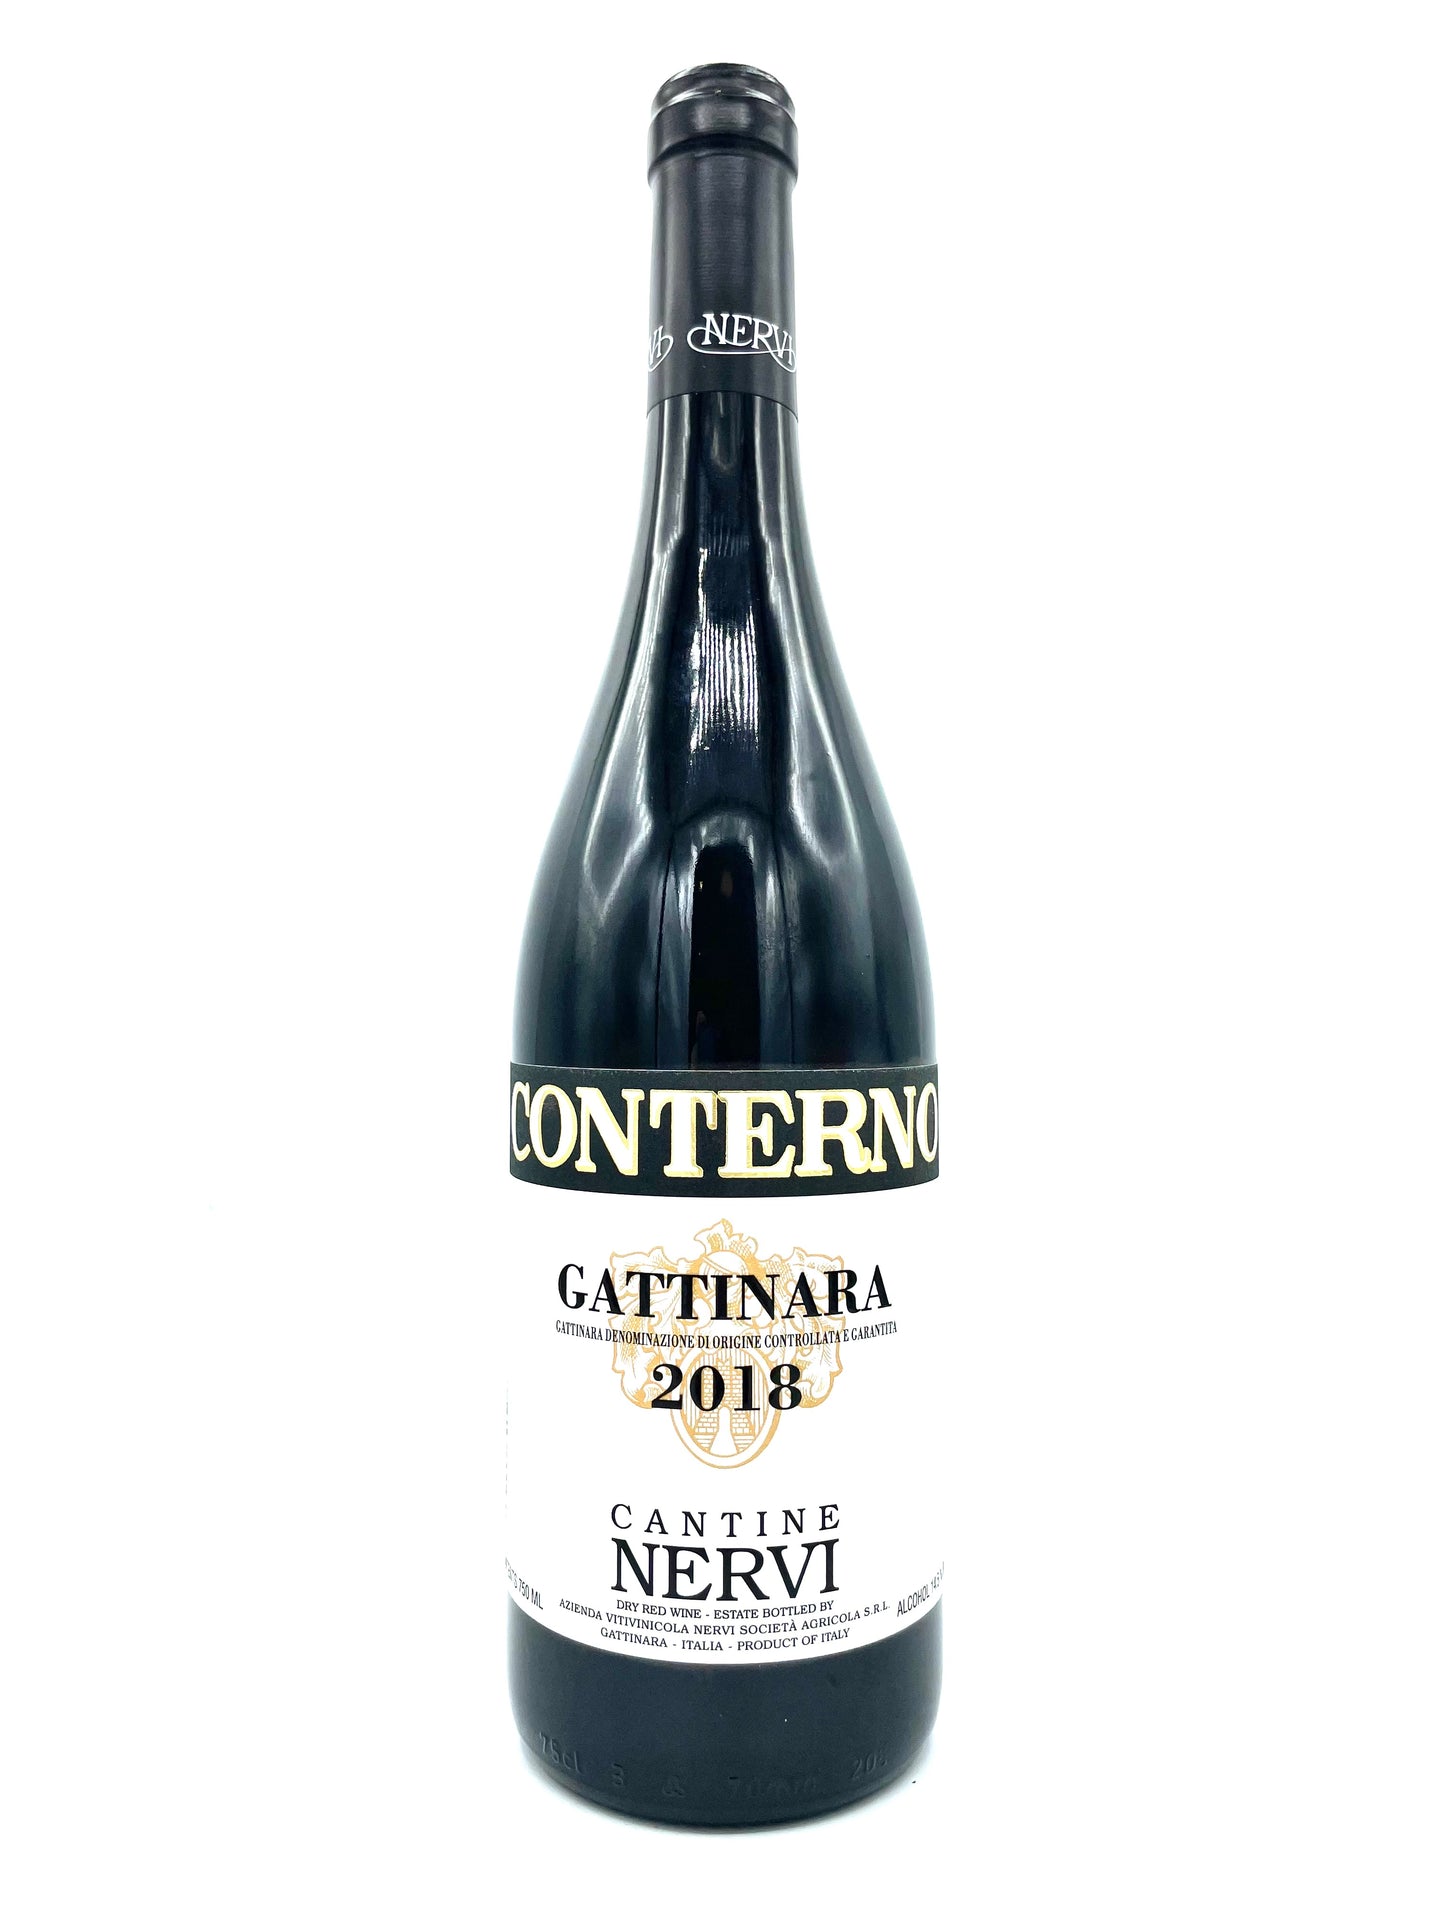 Nervi-Conterno, Gattinara 2018